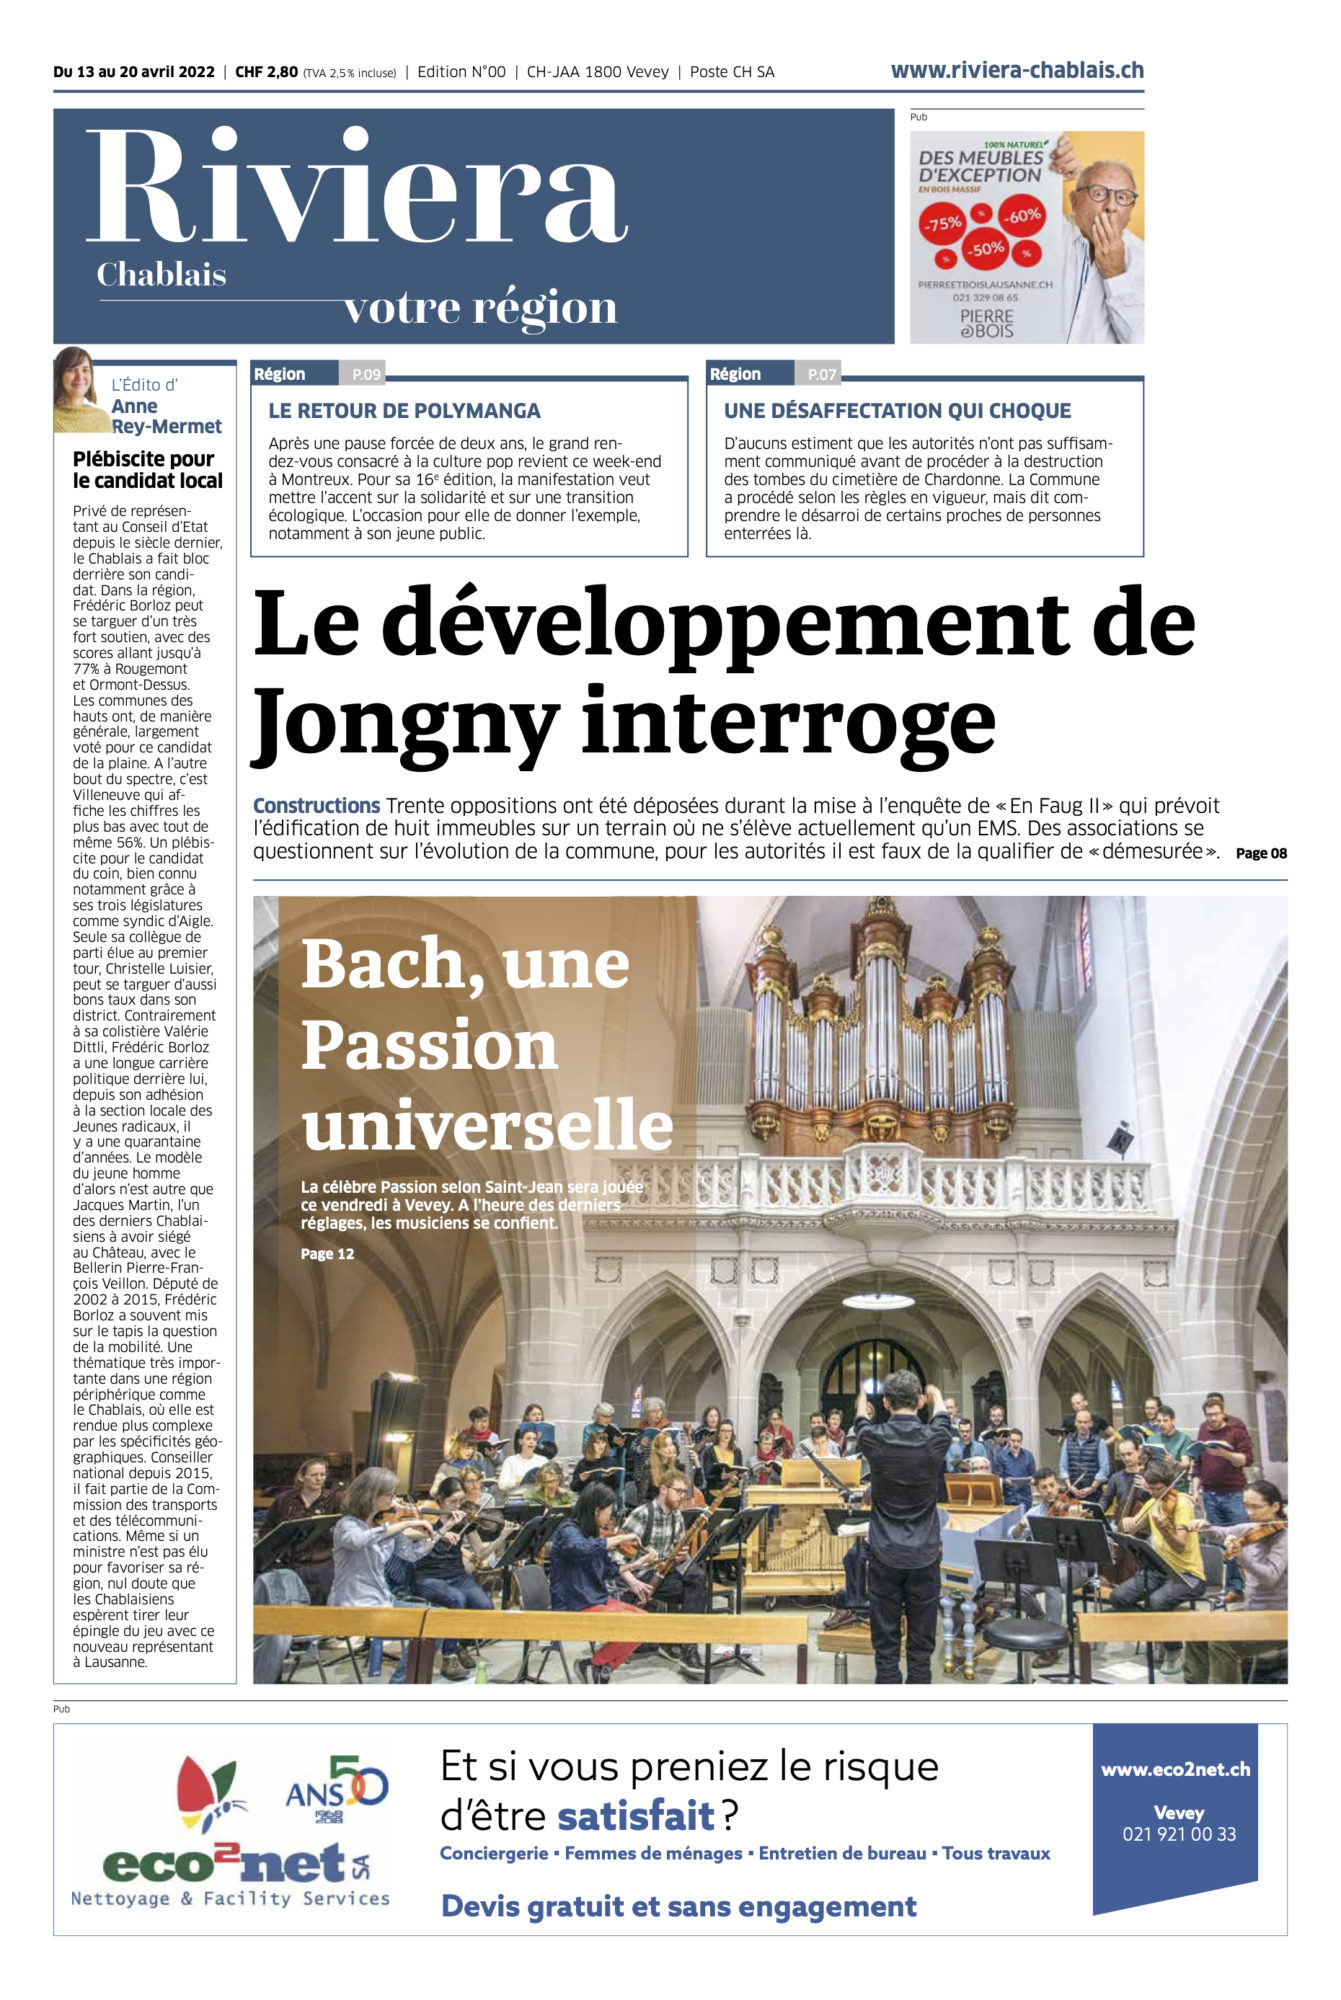 Journal Riviera n° 50 ©Dessin de Gilles,, pour l'article sur Frédéric Borloz, Le Chablais de retour au Conseil d’Etat“ du 13 avril 2022 page 1